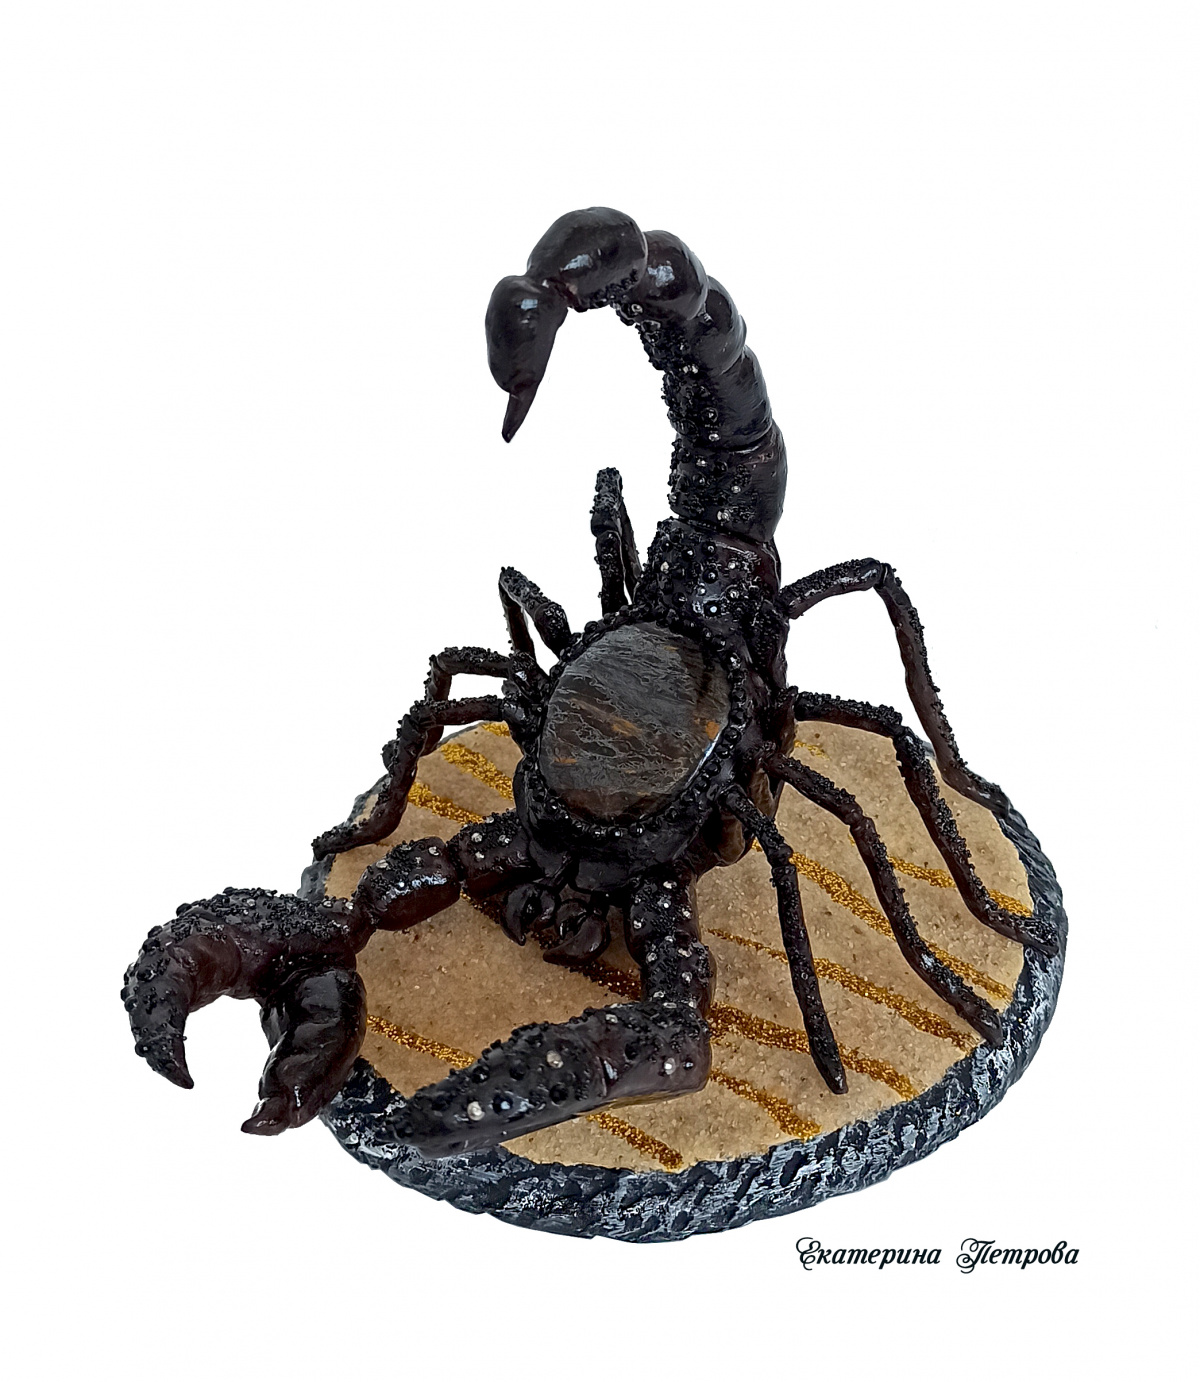 НЕбисерная лавка чудес: Царь скорпионов